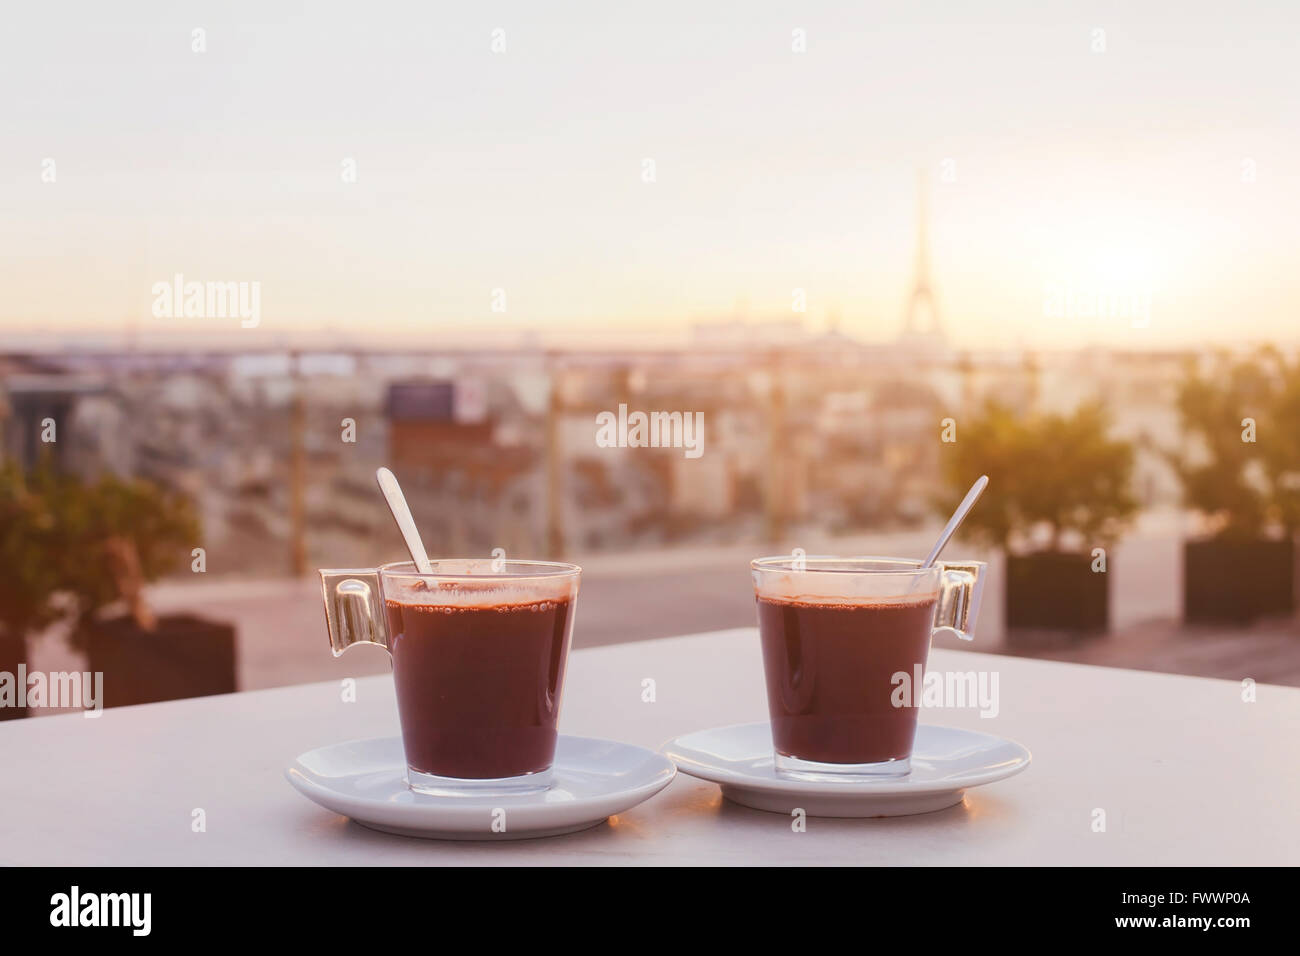 zwei Tassen Kaffee oder heiße Schokolade und Paris Skyline bei Sonnenuntergang, Café mit Panoramablick über die Stadt mit Eiffelturm Stockfoto